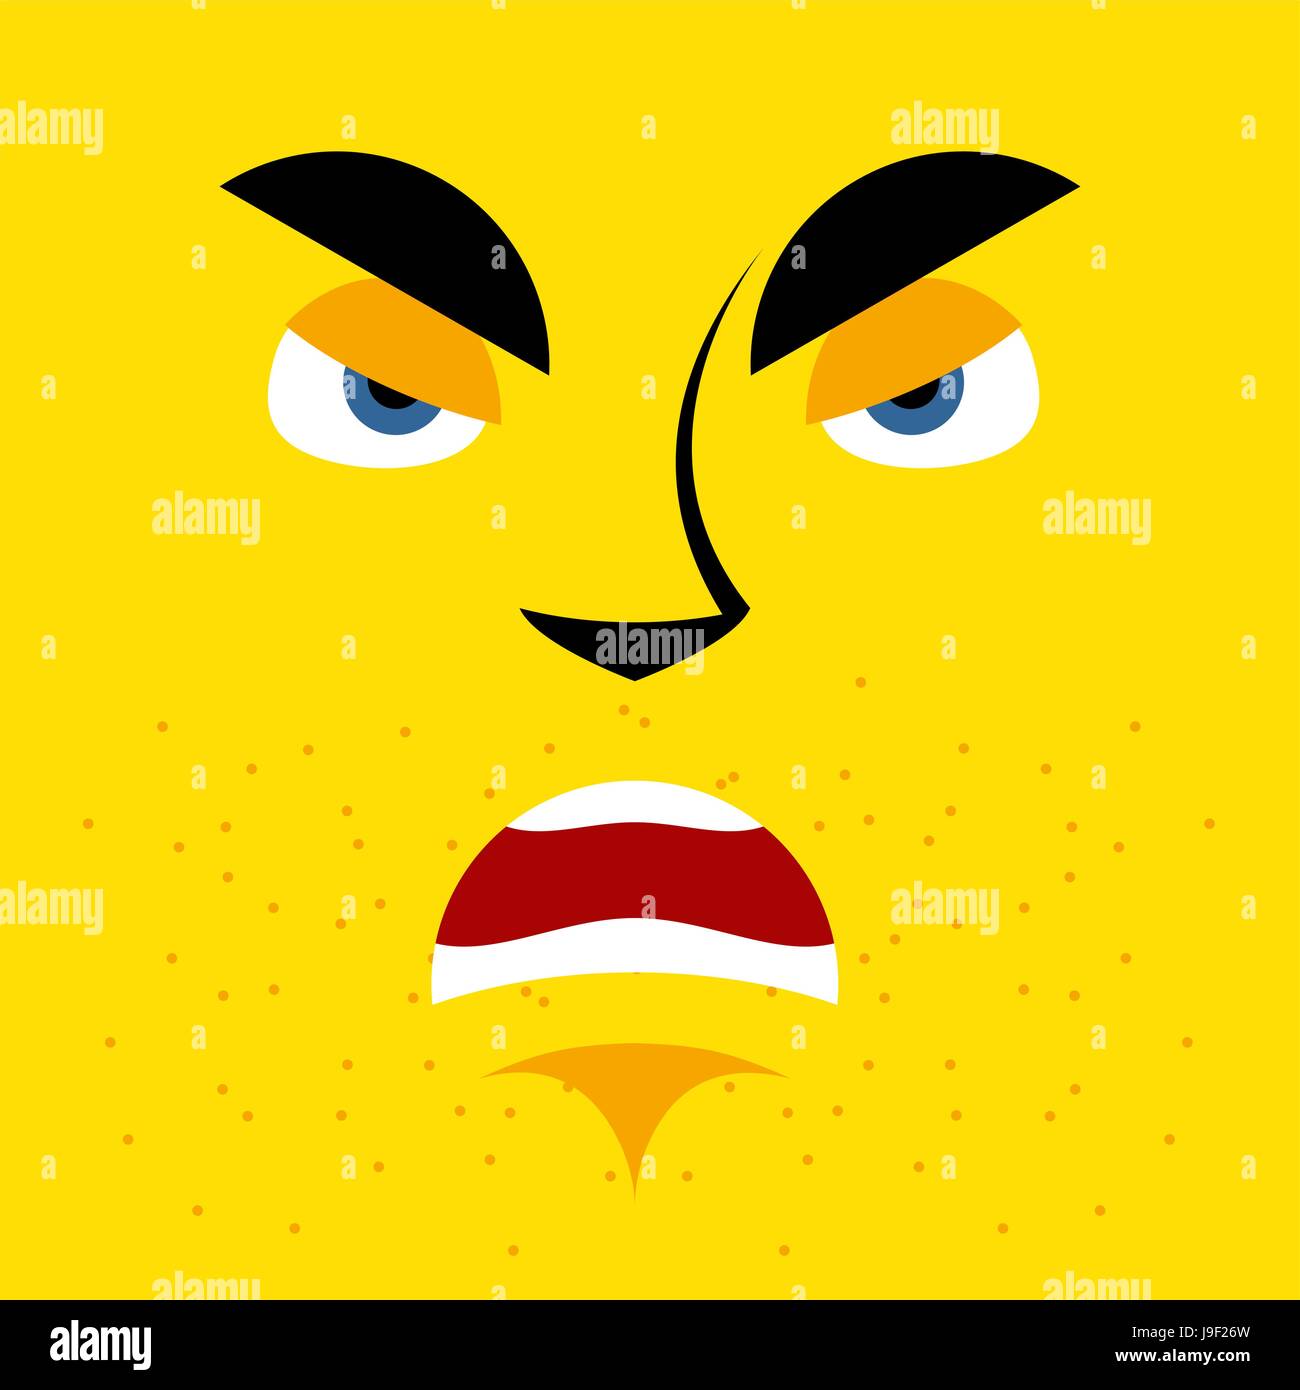 Cartoon wütendes Gesicht auf gelbem Hintergrund. aggressiv, mürrisch Emotion. Unzufrieden mit Person runzelt die Stirn. Feindlichen Charakter Stock Vektor